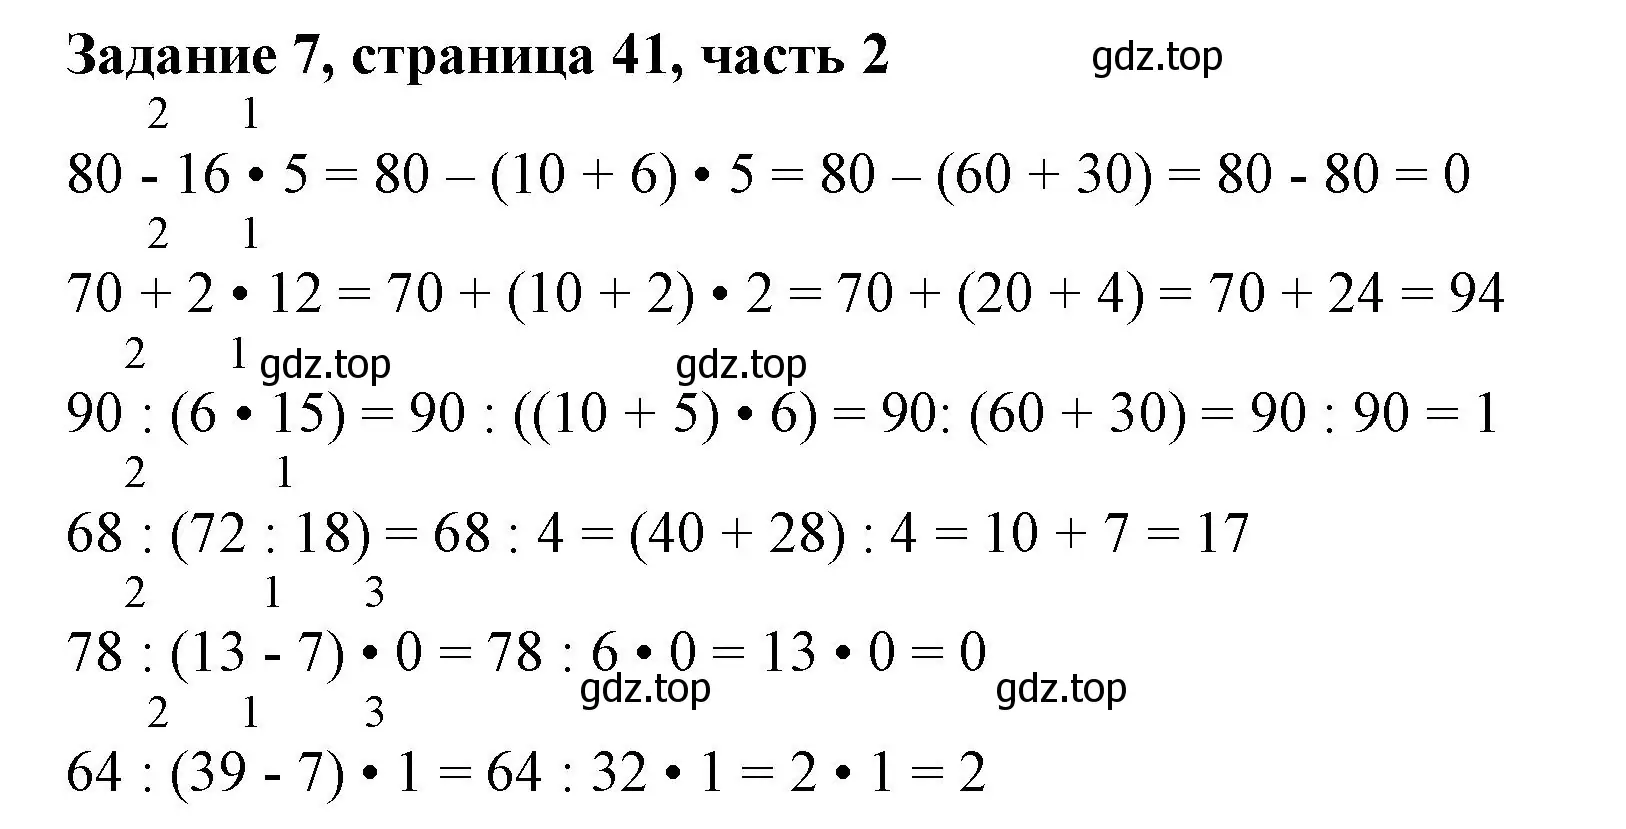 Решение номер 7 (страница 41) гдз по математике 3 класс Моро, Бантова, учебник 2 часть